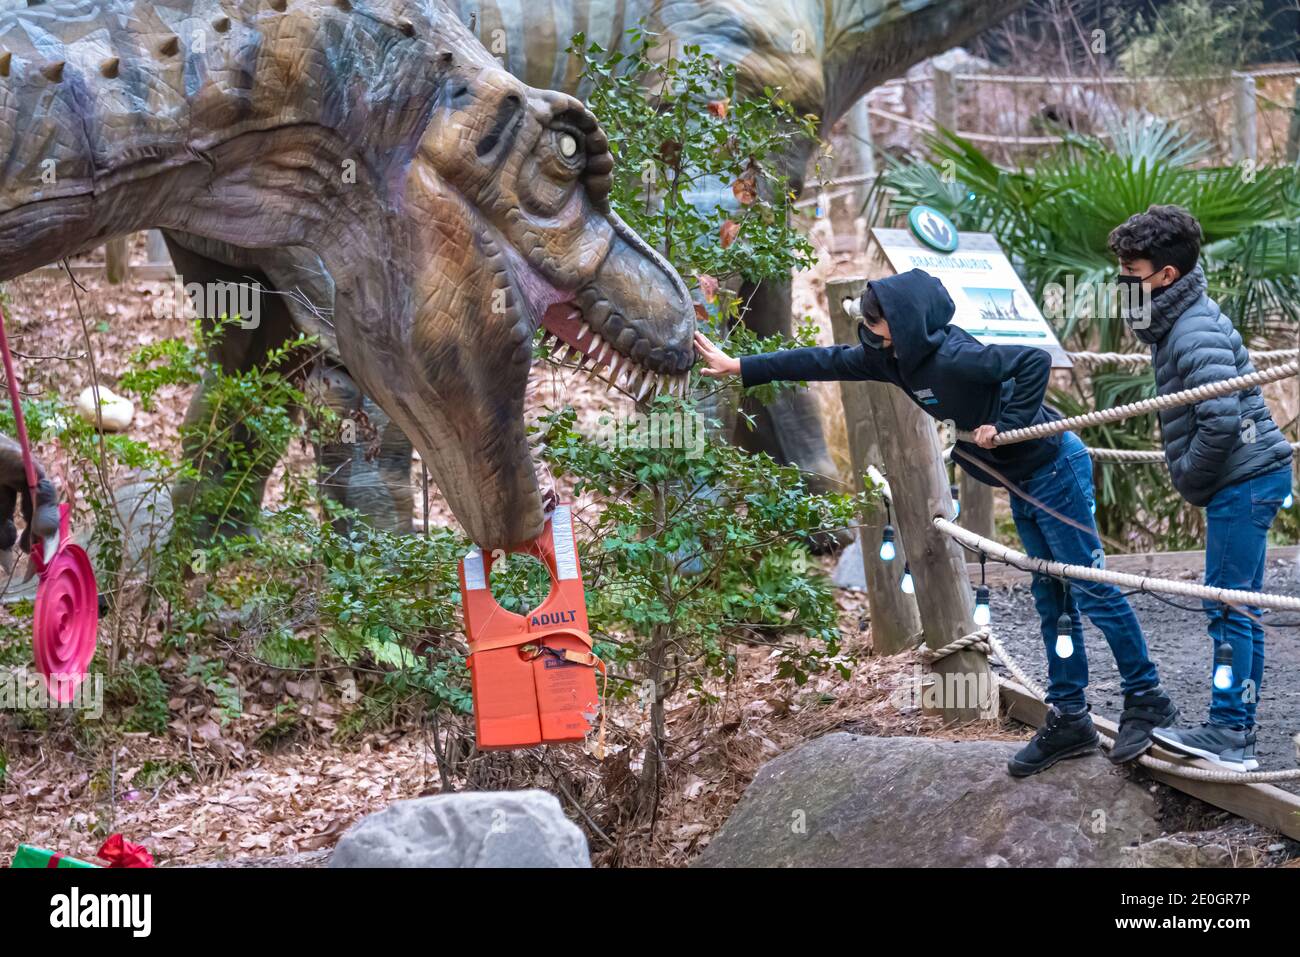 Un curieux garçon se fait un contact avec un Tyrannosaurus rex interactif et grandeur nature à l'attraction Dinosaur Explore du parc de Stone Mountain à Atlanta, en Géorgie. Banque D'Images